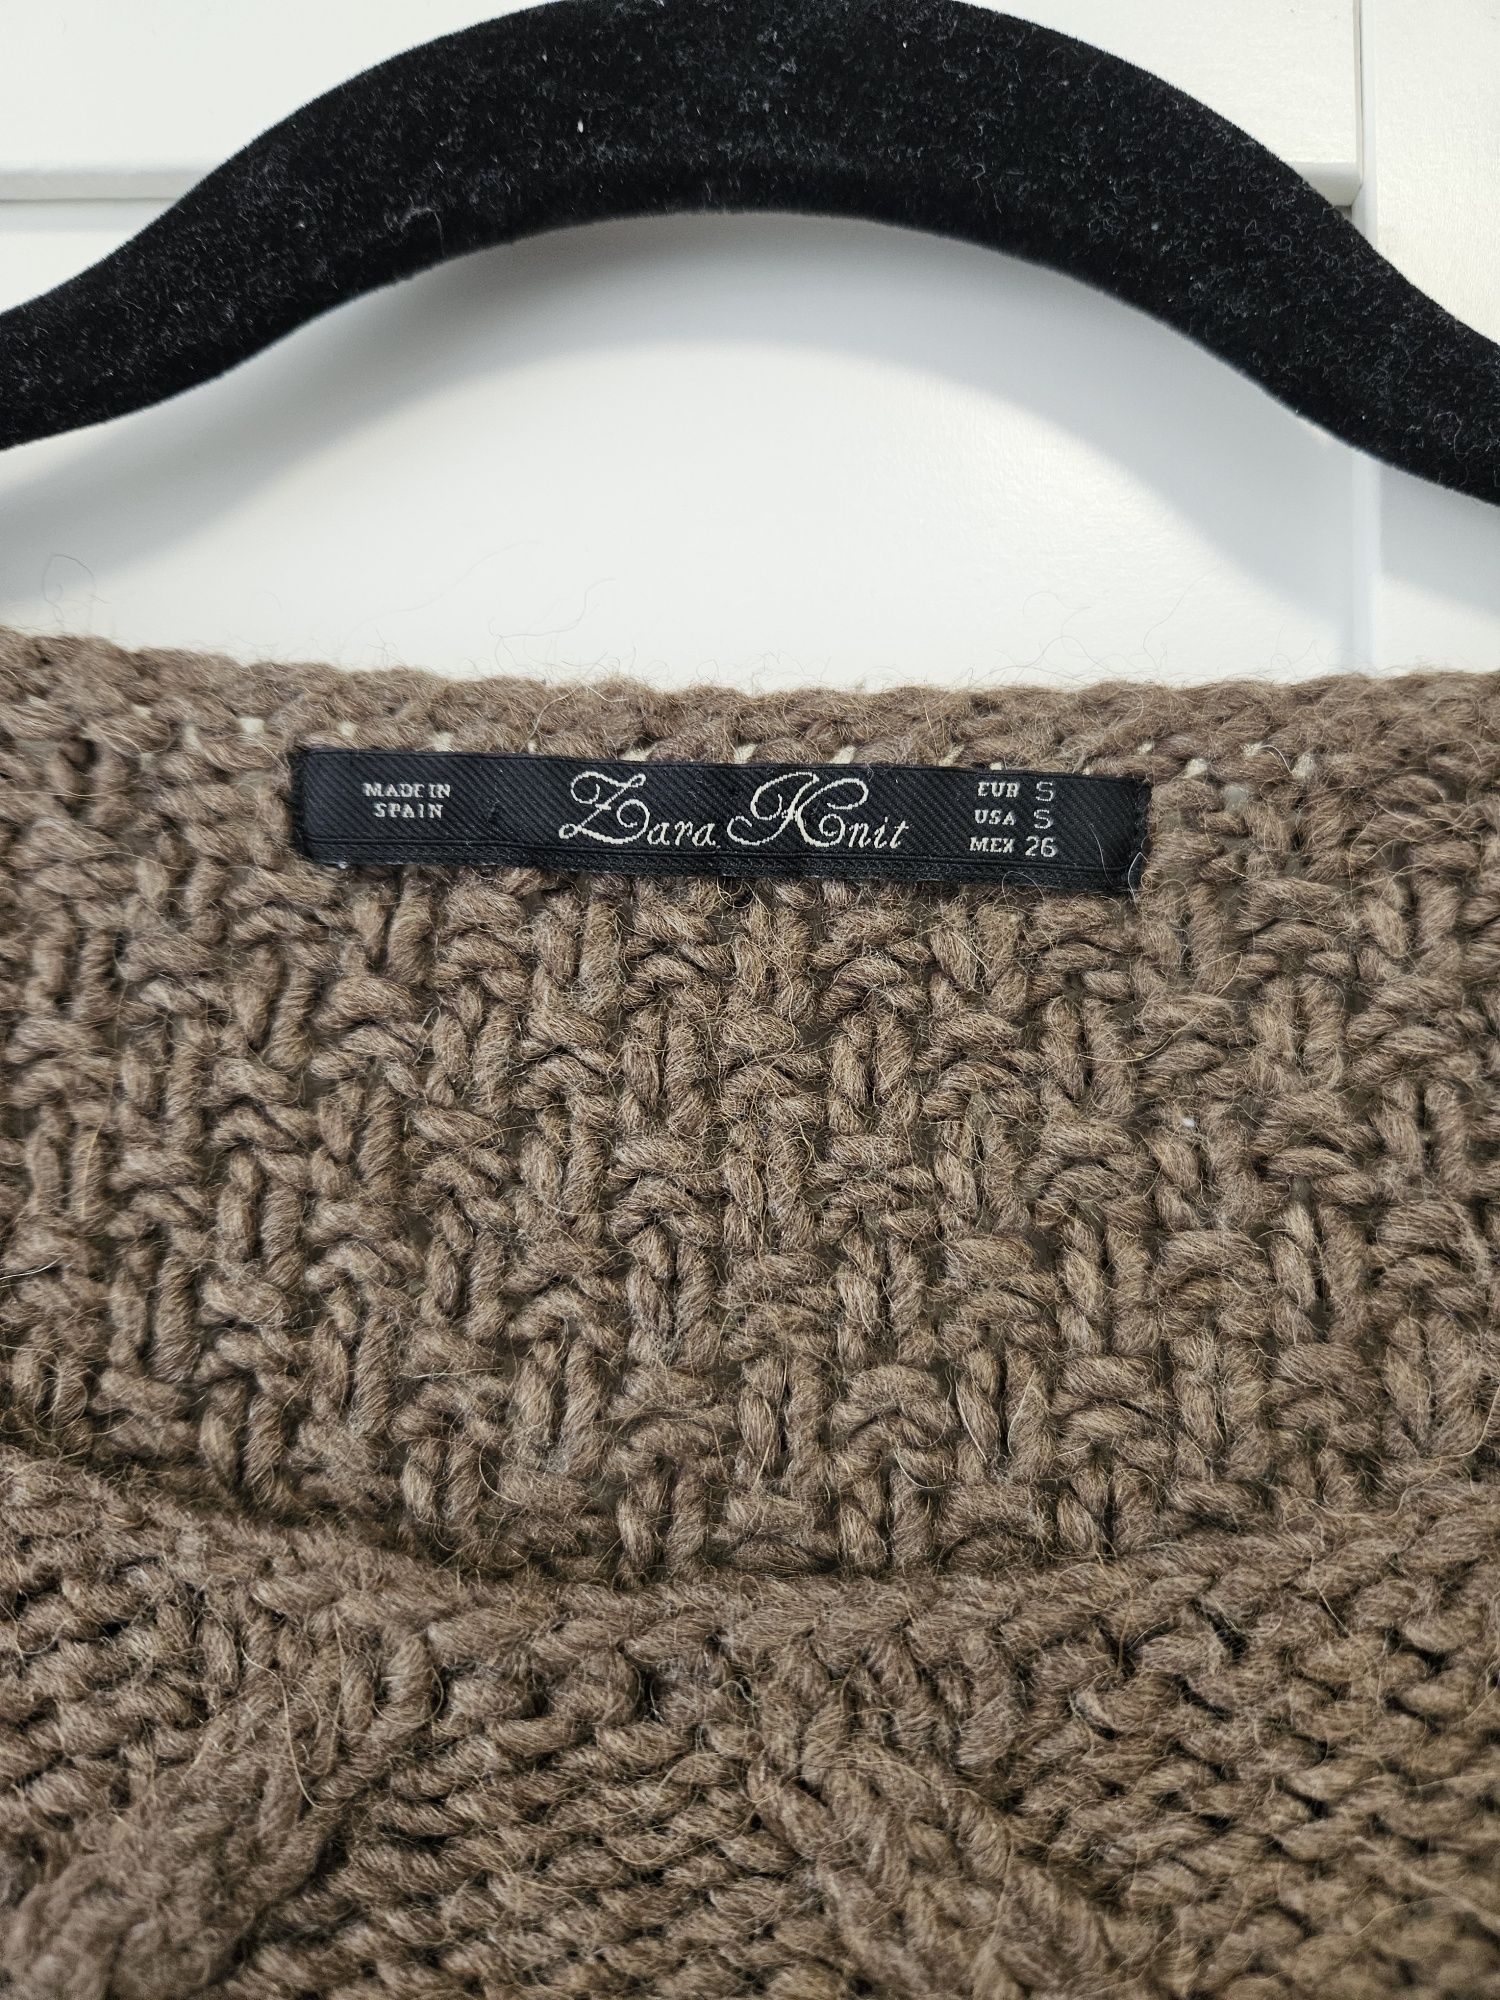 Pulover tricotat
Zara knit
Marimea S
Stare impecabila 
60 lei